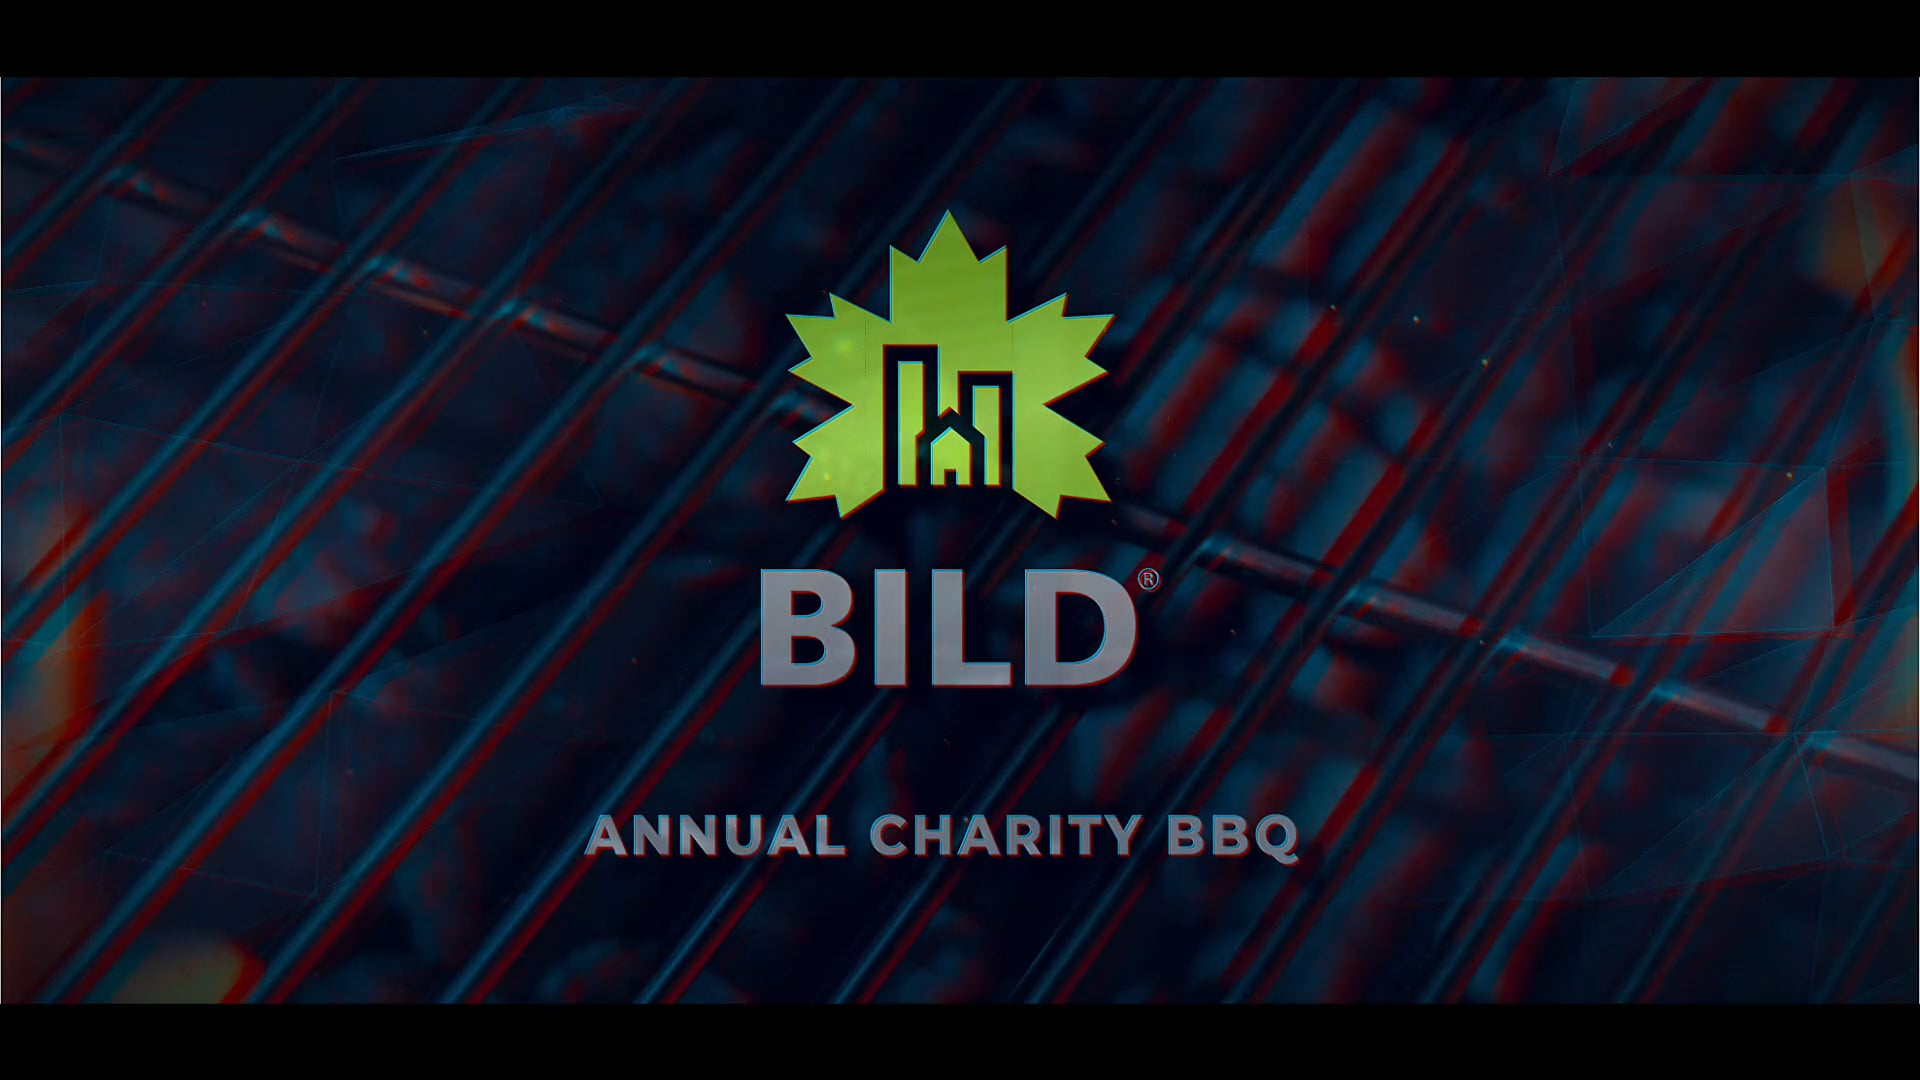 BILD BBQ 2019